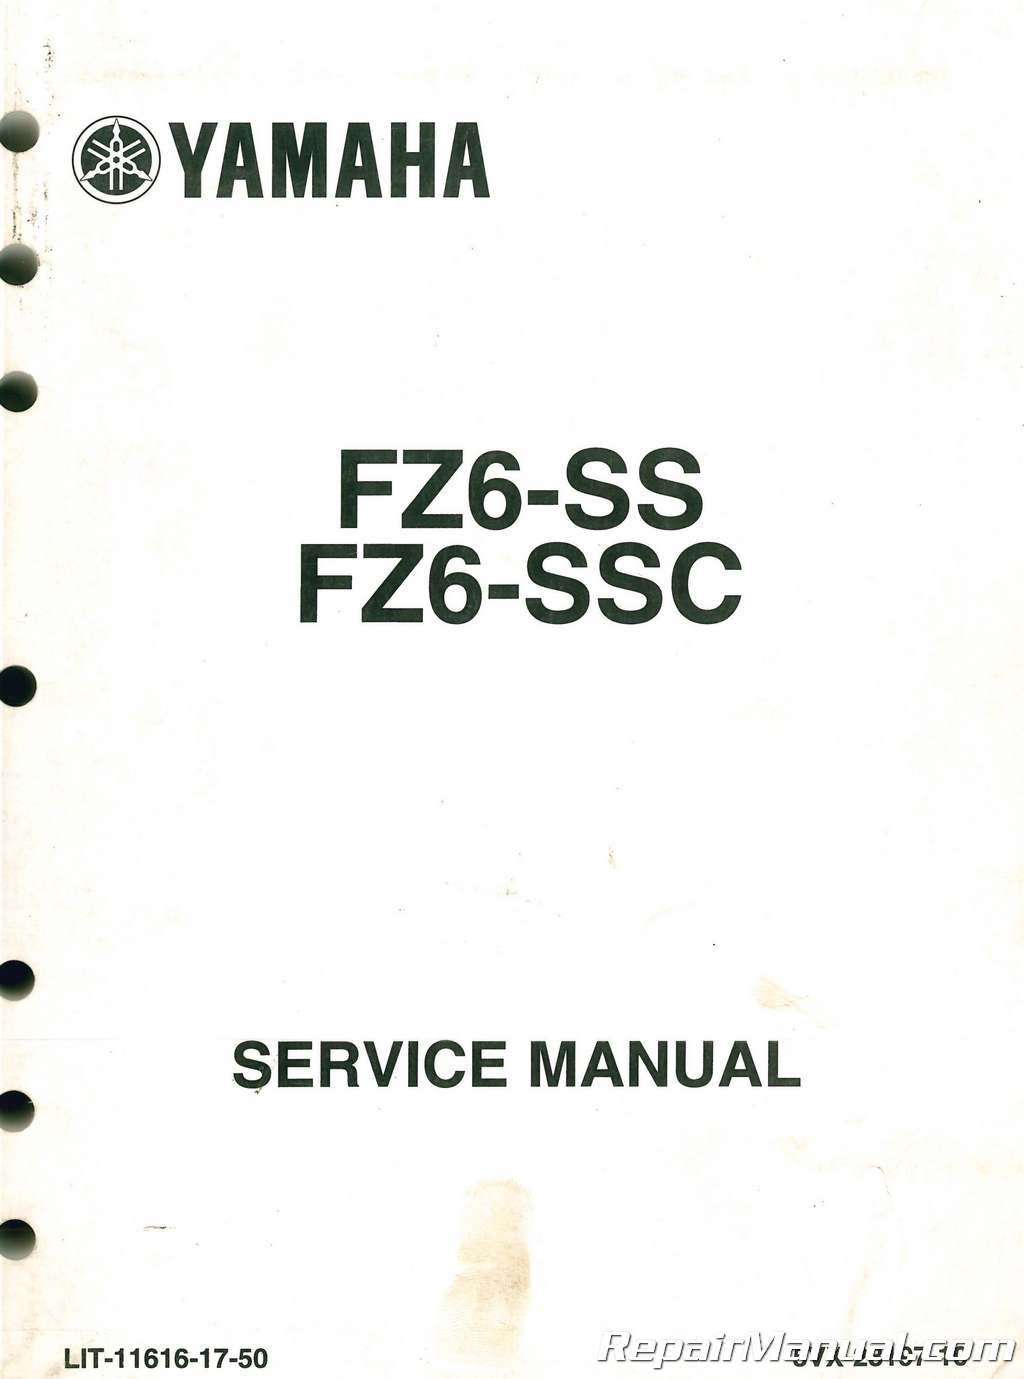 2006 yamaha fz6 review